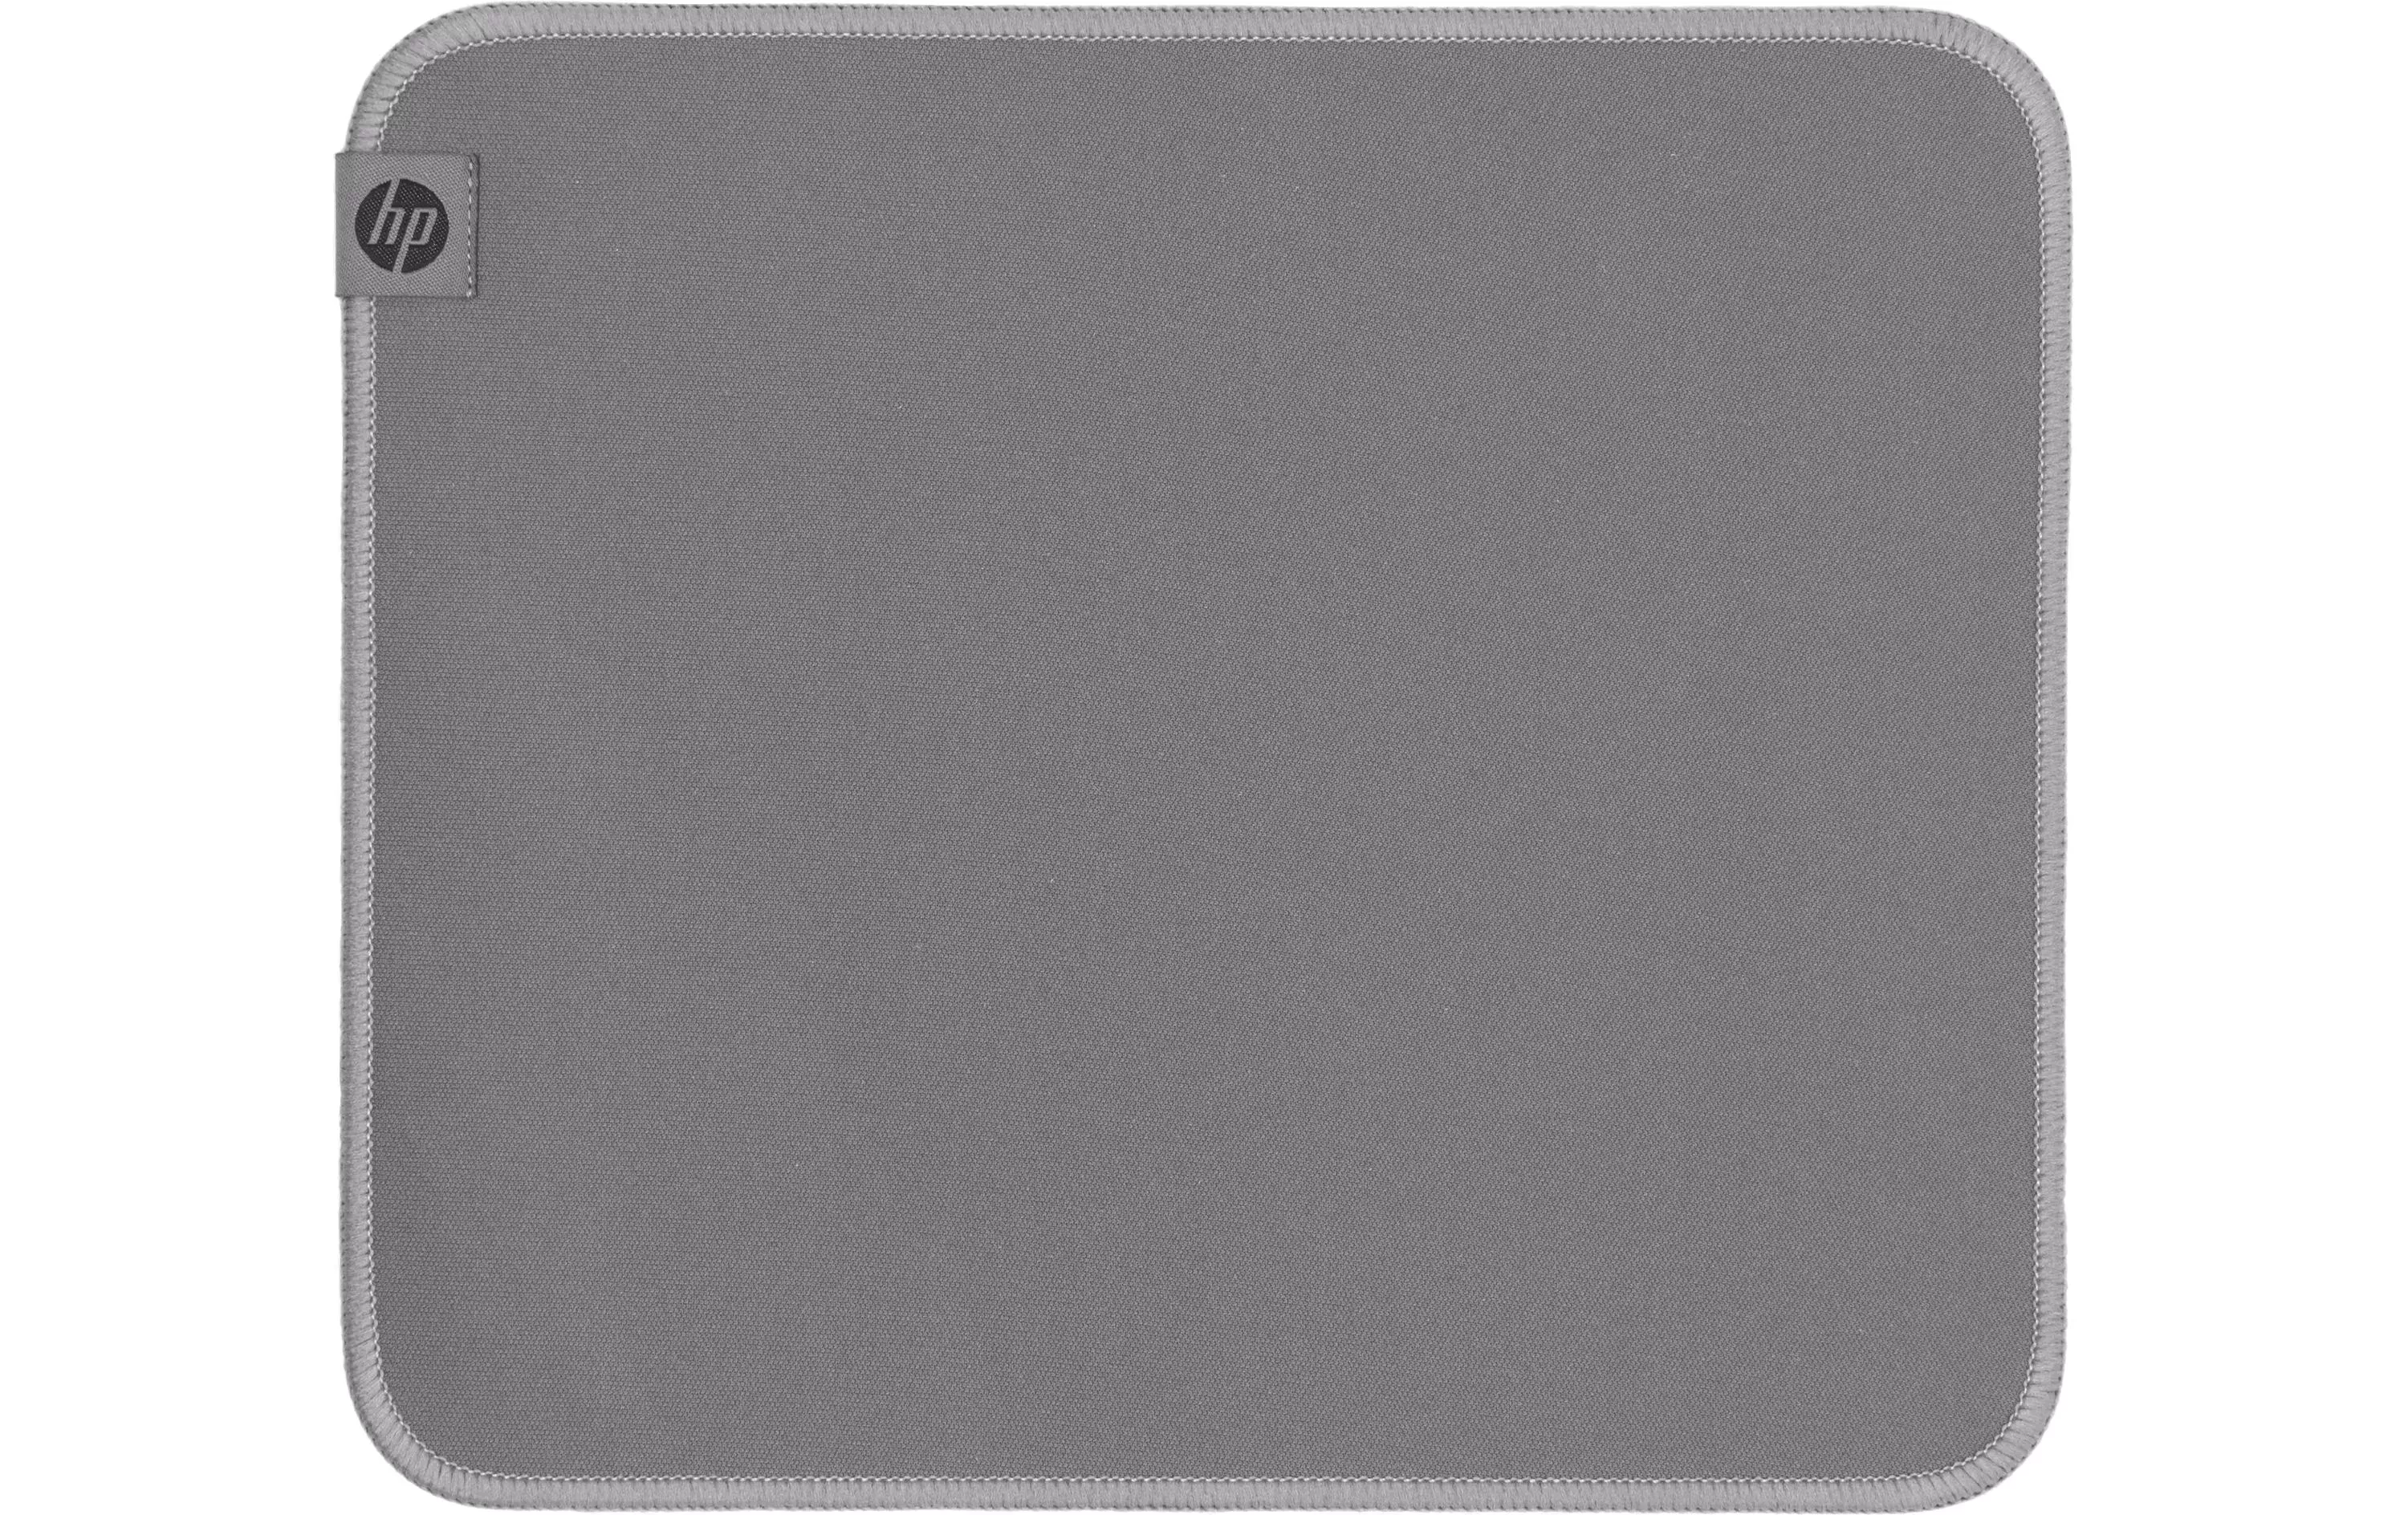 Tappetino per mouse HP 100 grigio